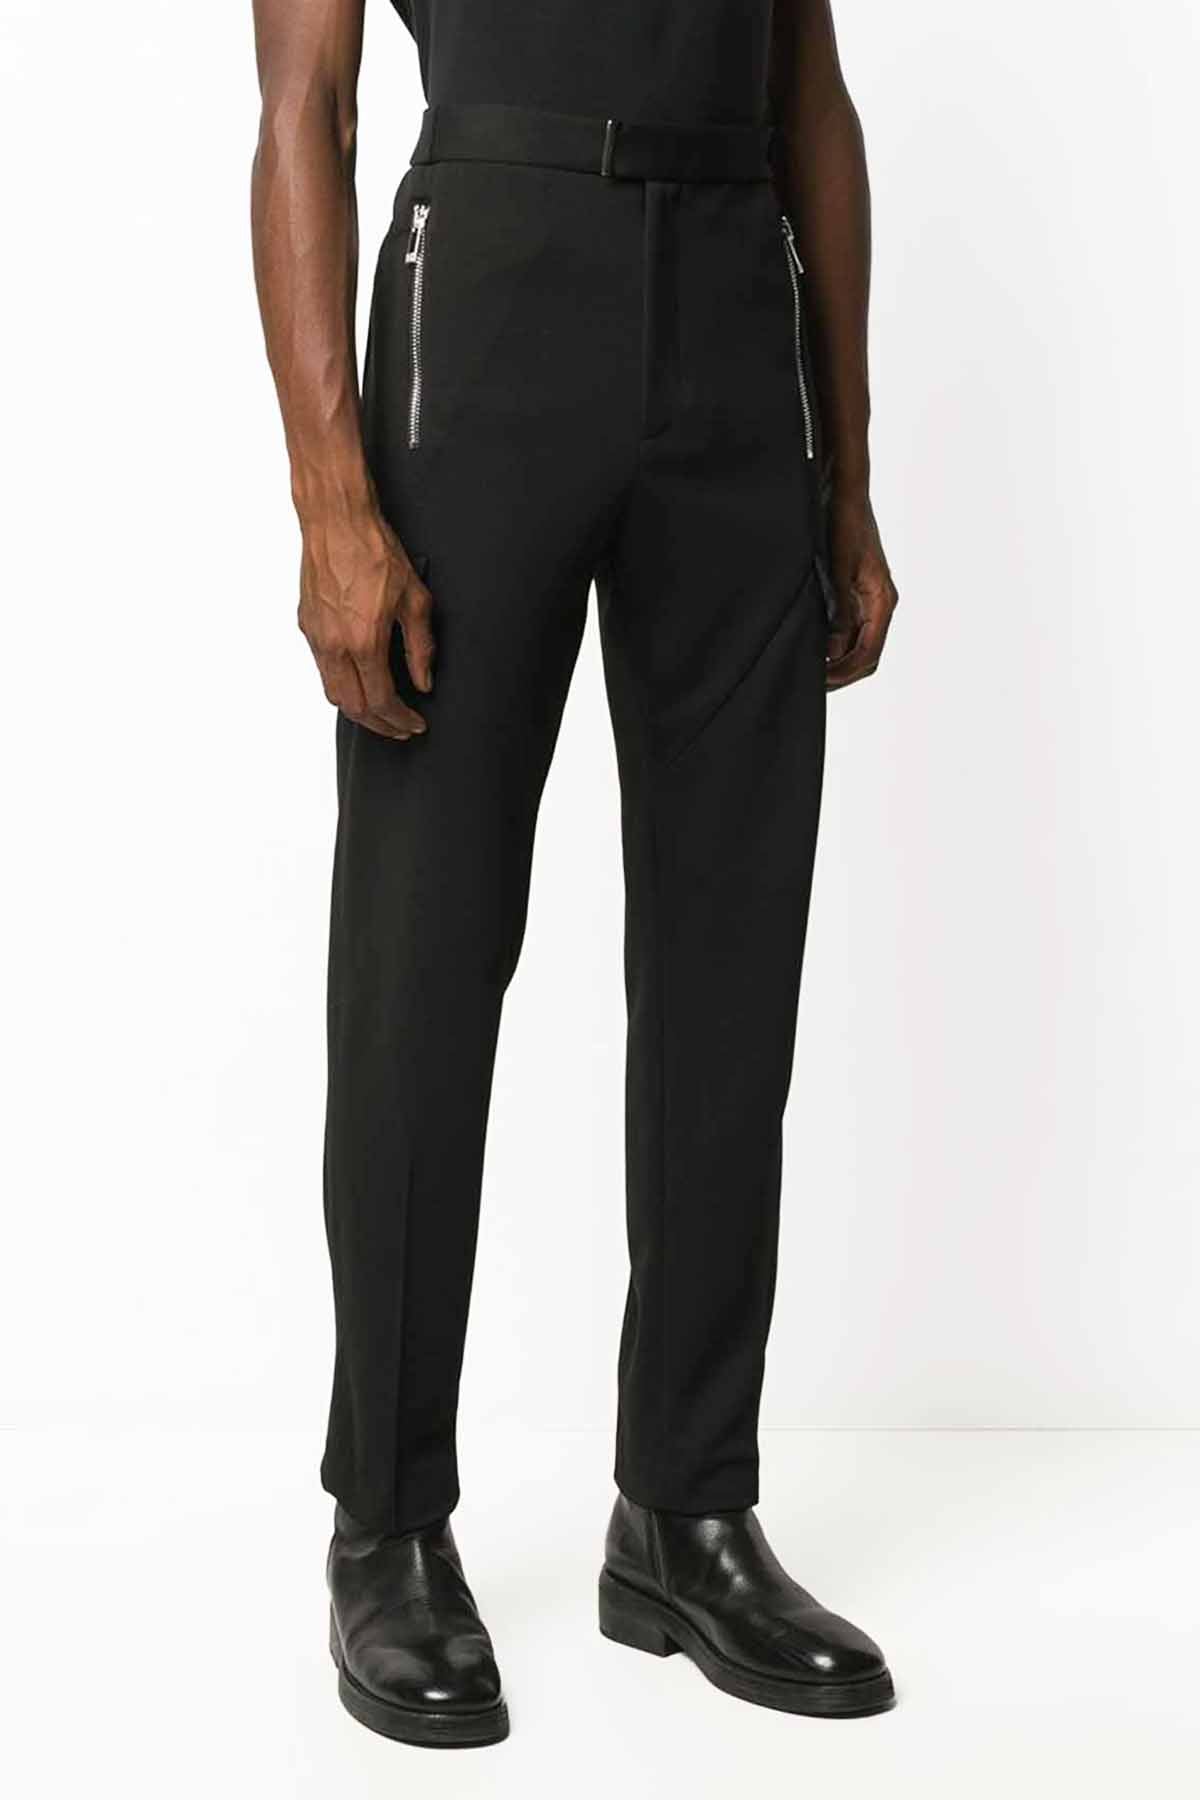 Les Hommes Skinny Fit Pantolon-Libas Trendy Fashion Store